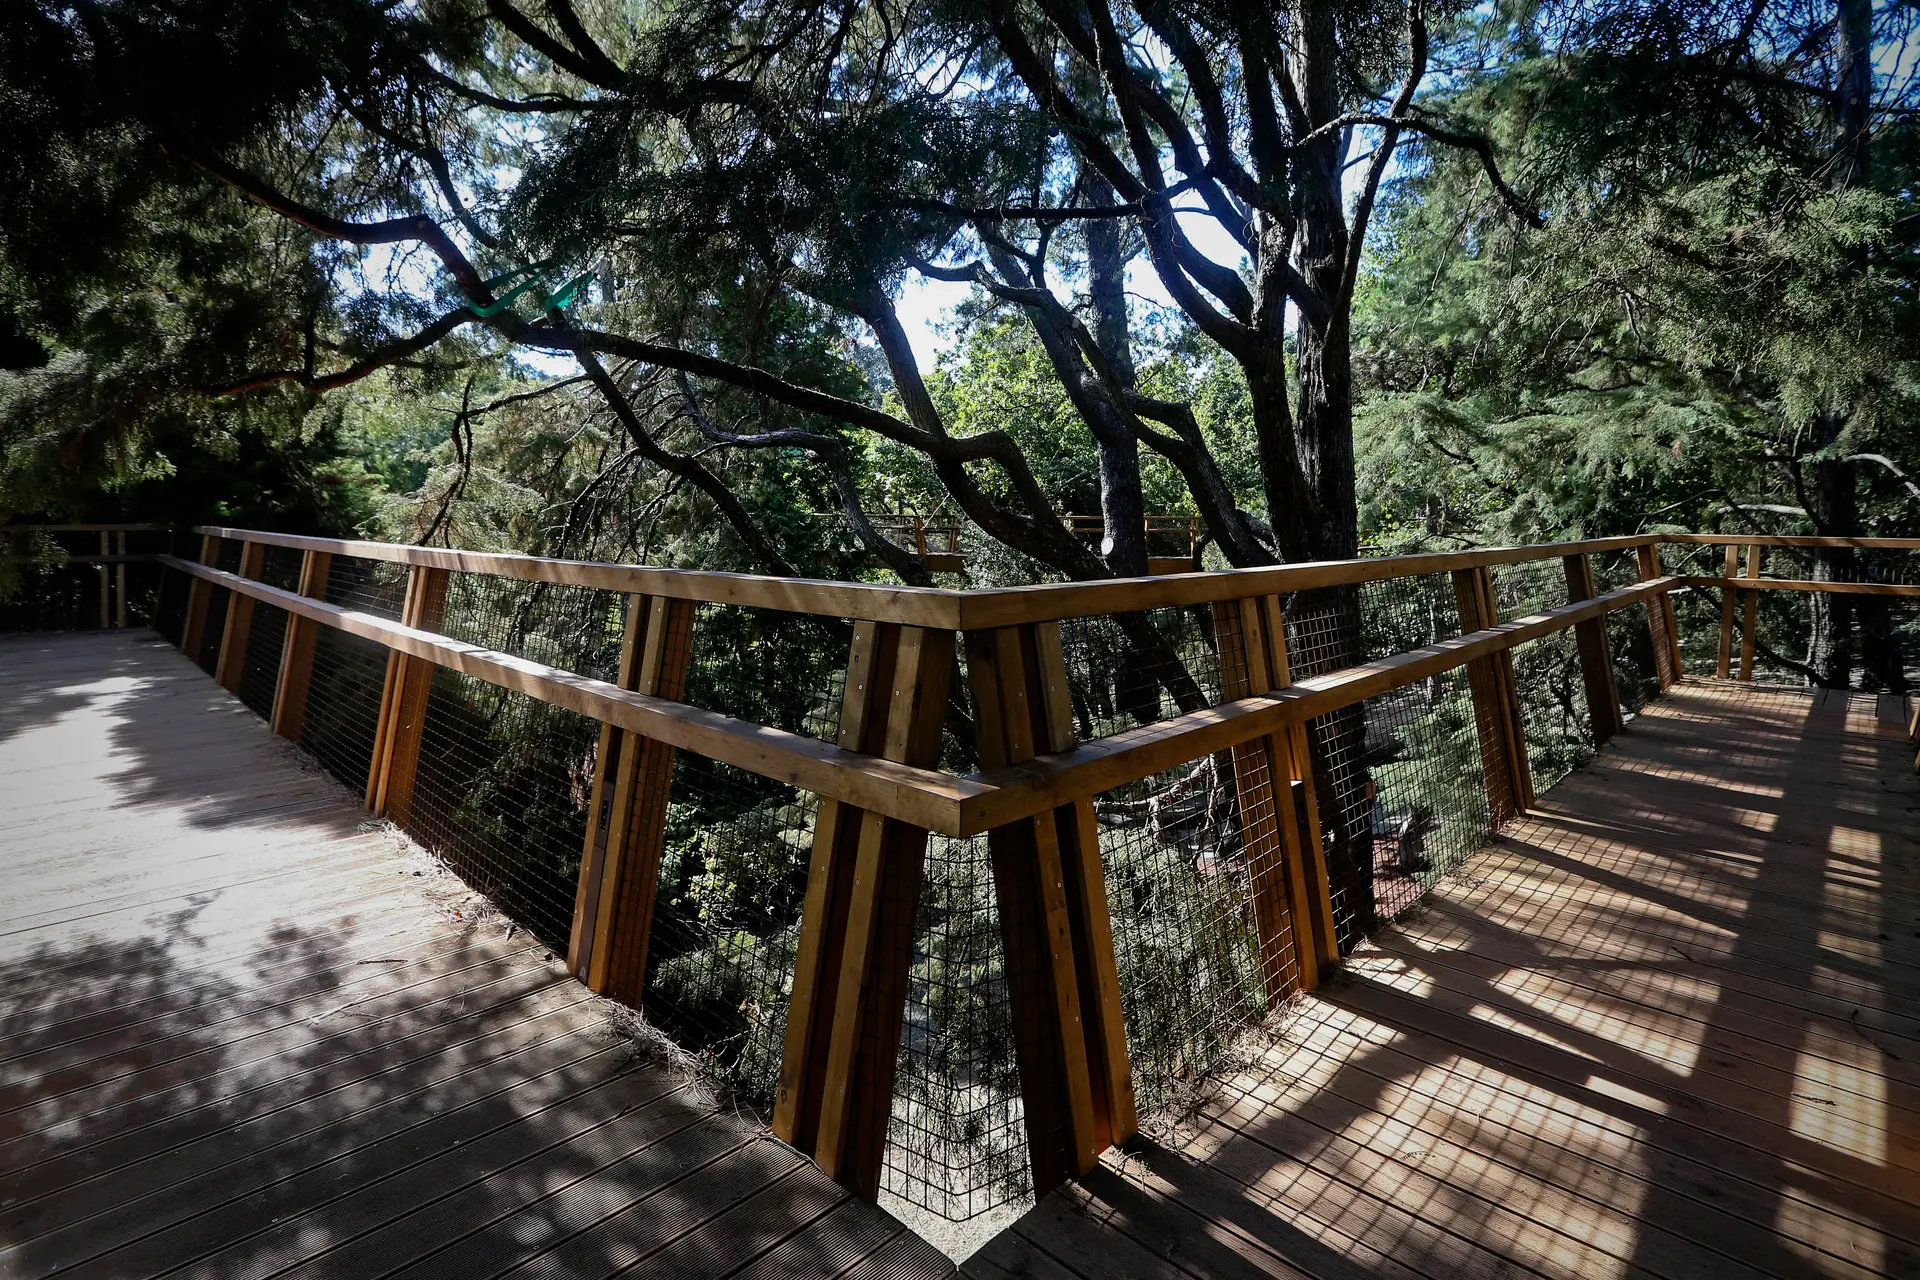 A Treetop Walk do parque de Serralves abre a 14 de Setembro, dia em que a entrada é gratuita para todos os visitantes.